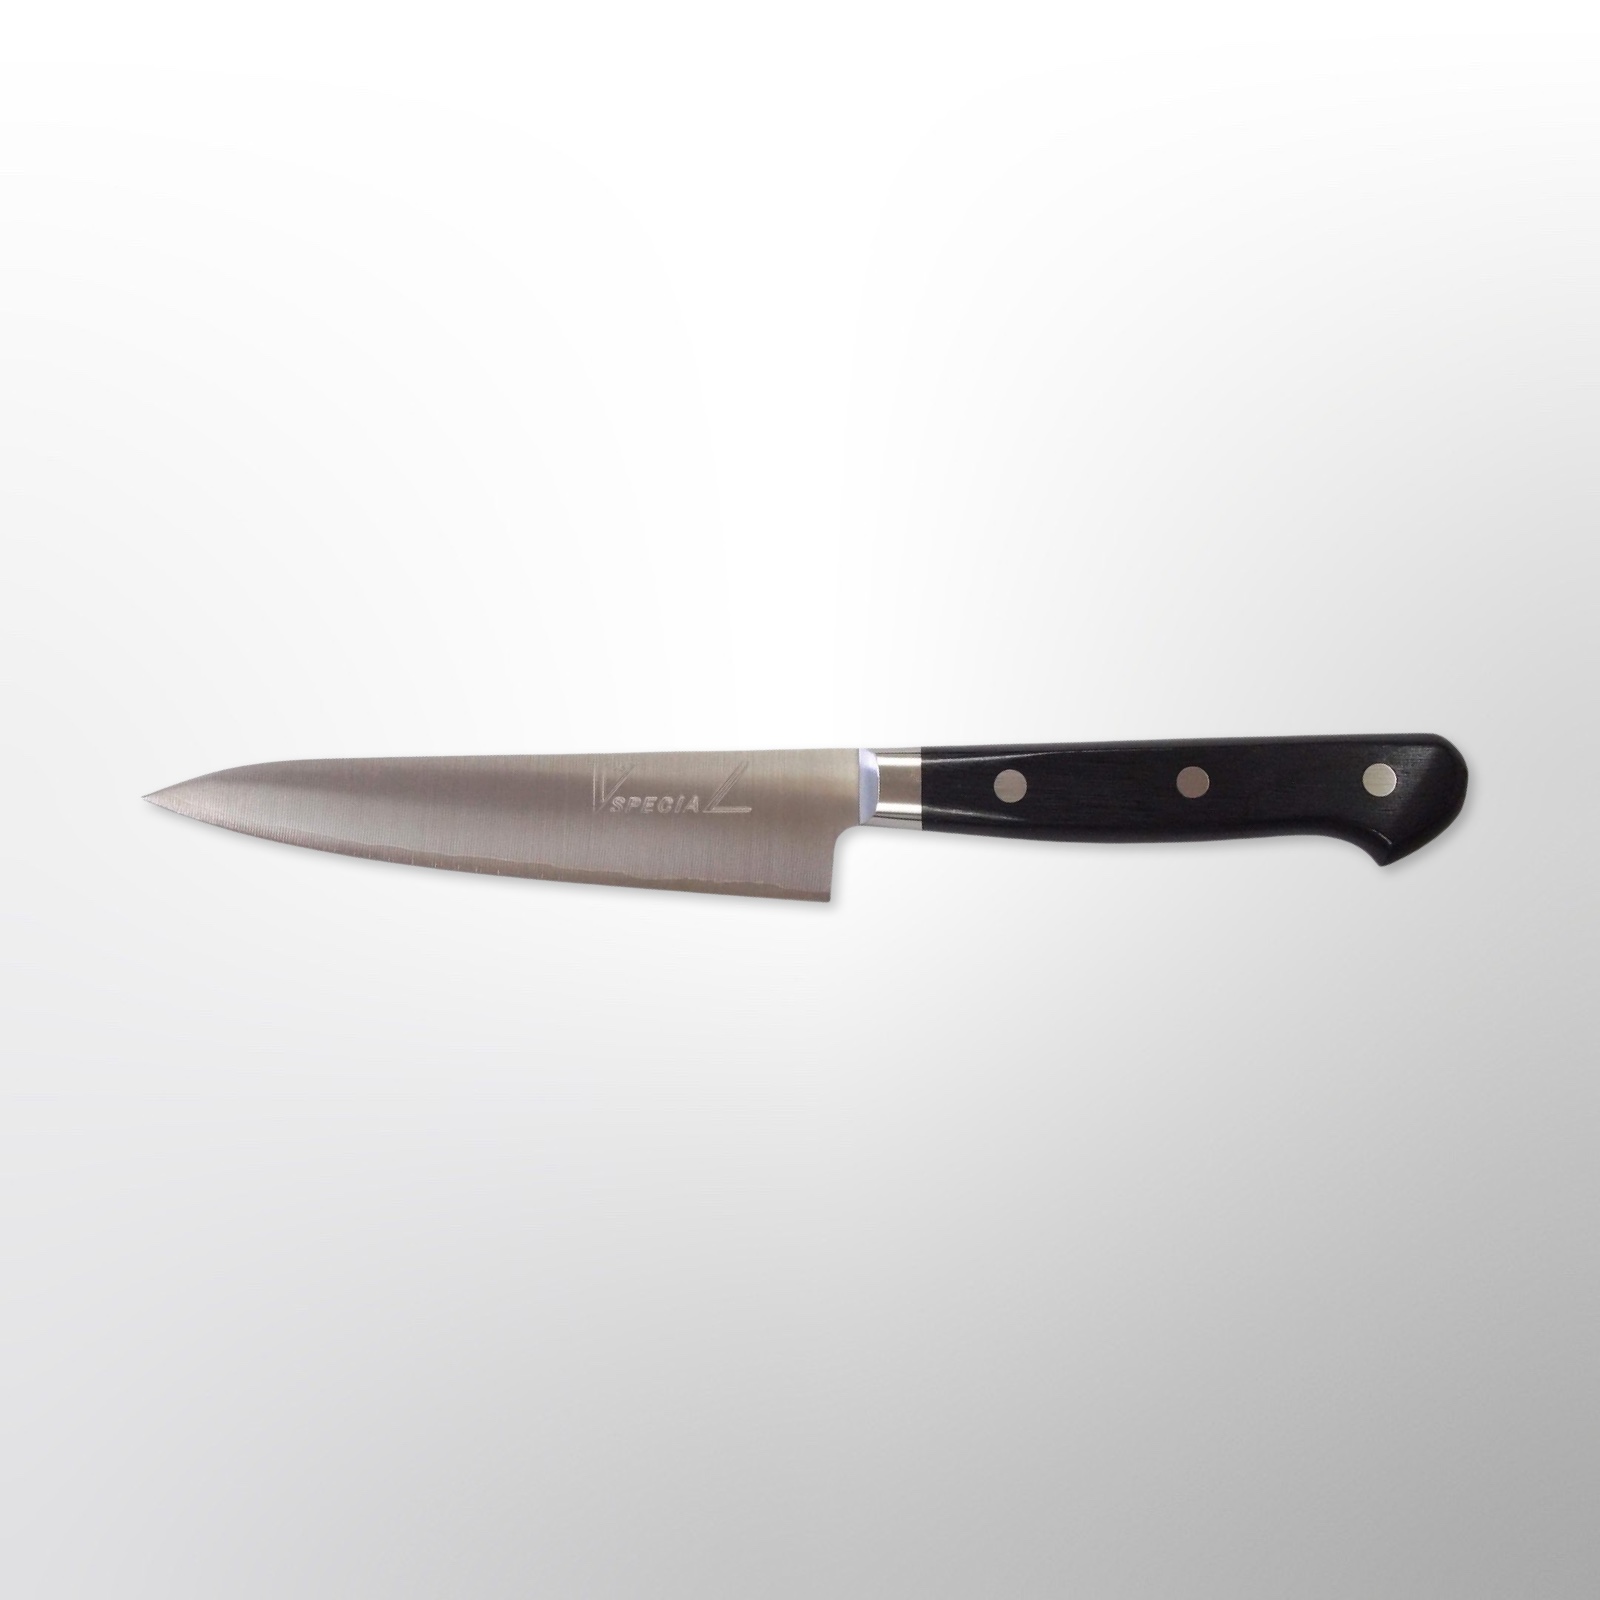 סכין עזר פטי 130מ״מ פלדת V.10 SPECIAL גימור מט מלוטש טאקאמורה יפן מק״ט SKTAKAMTKMTK17